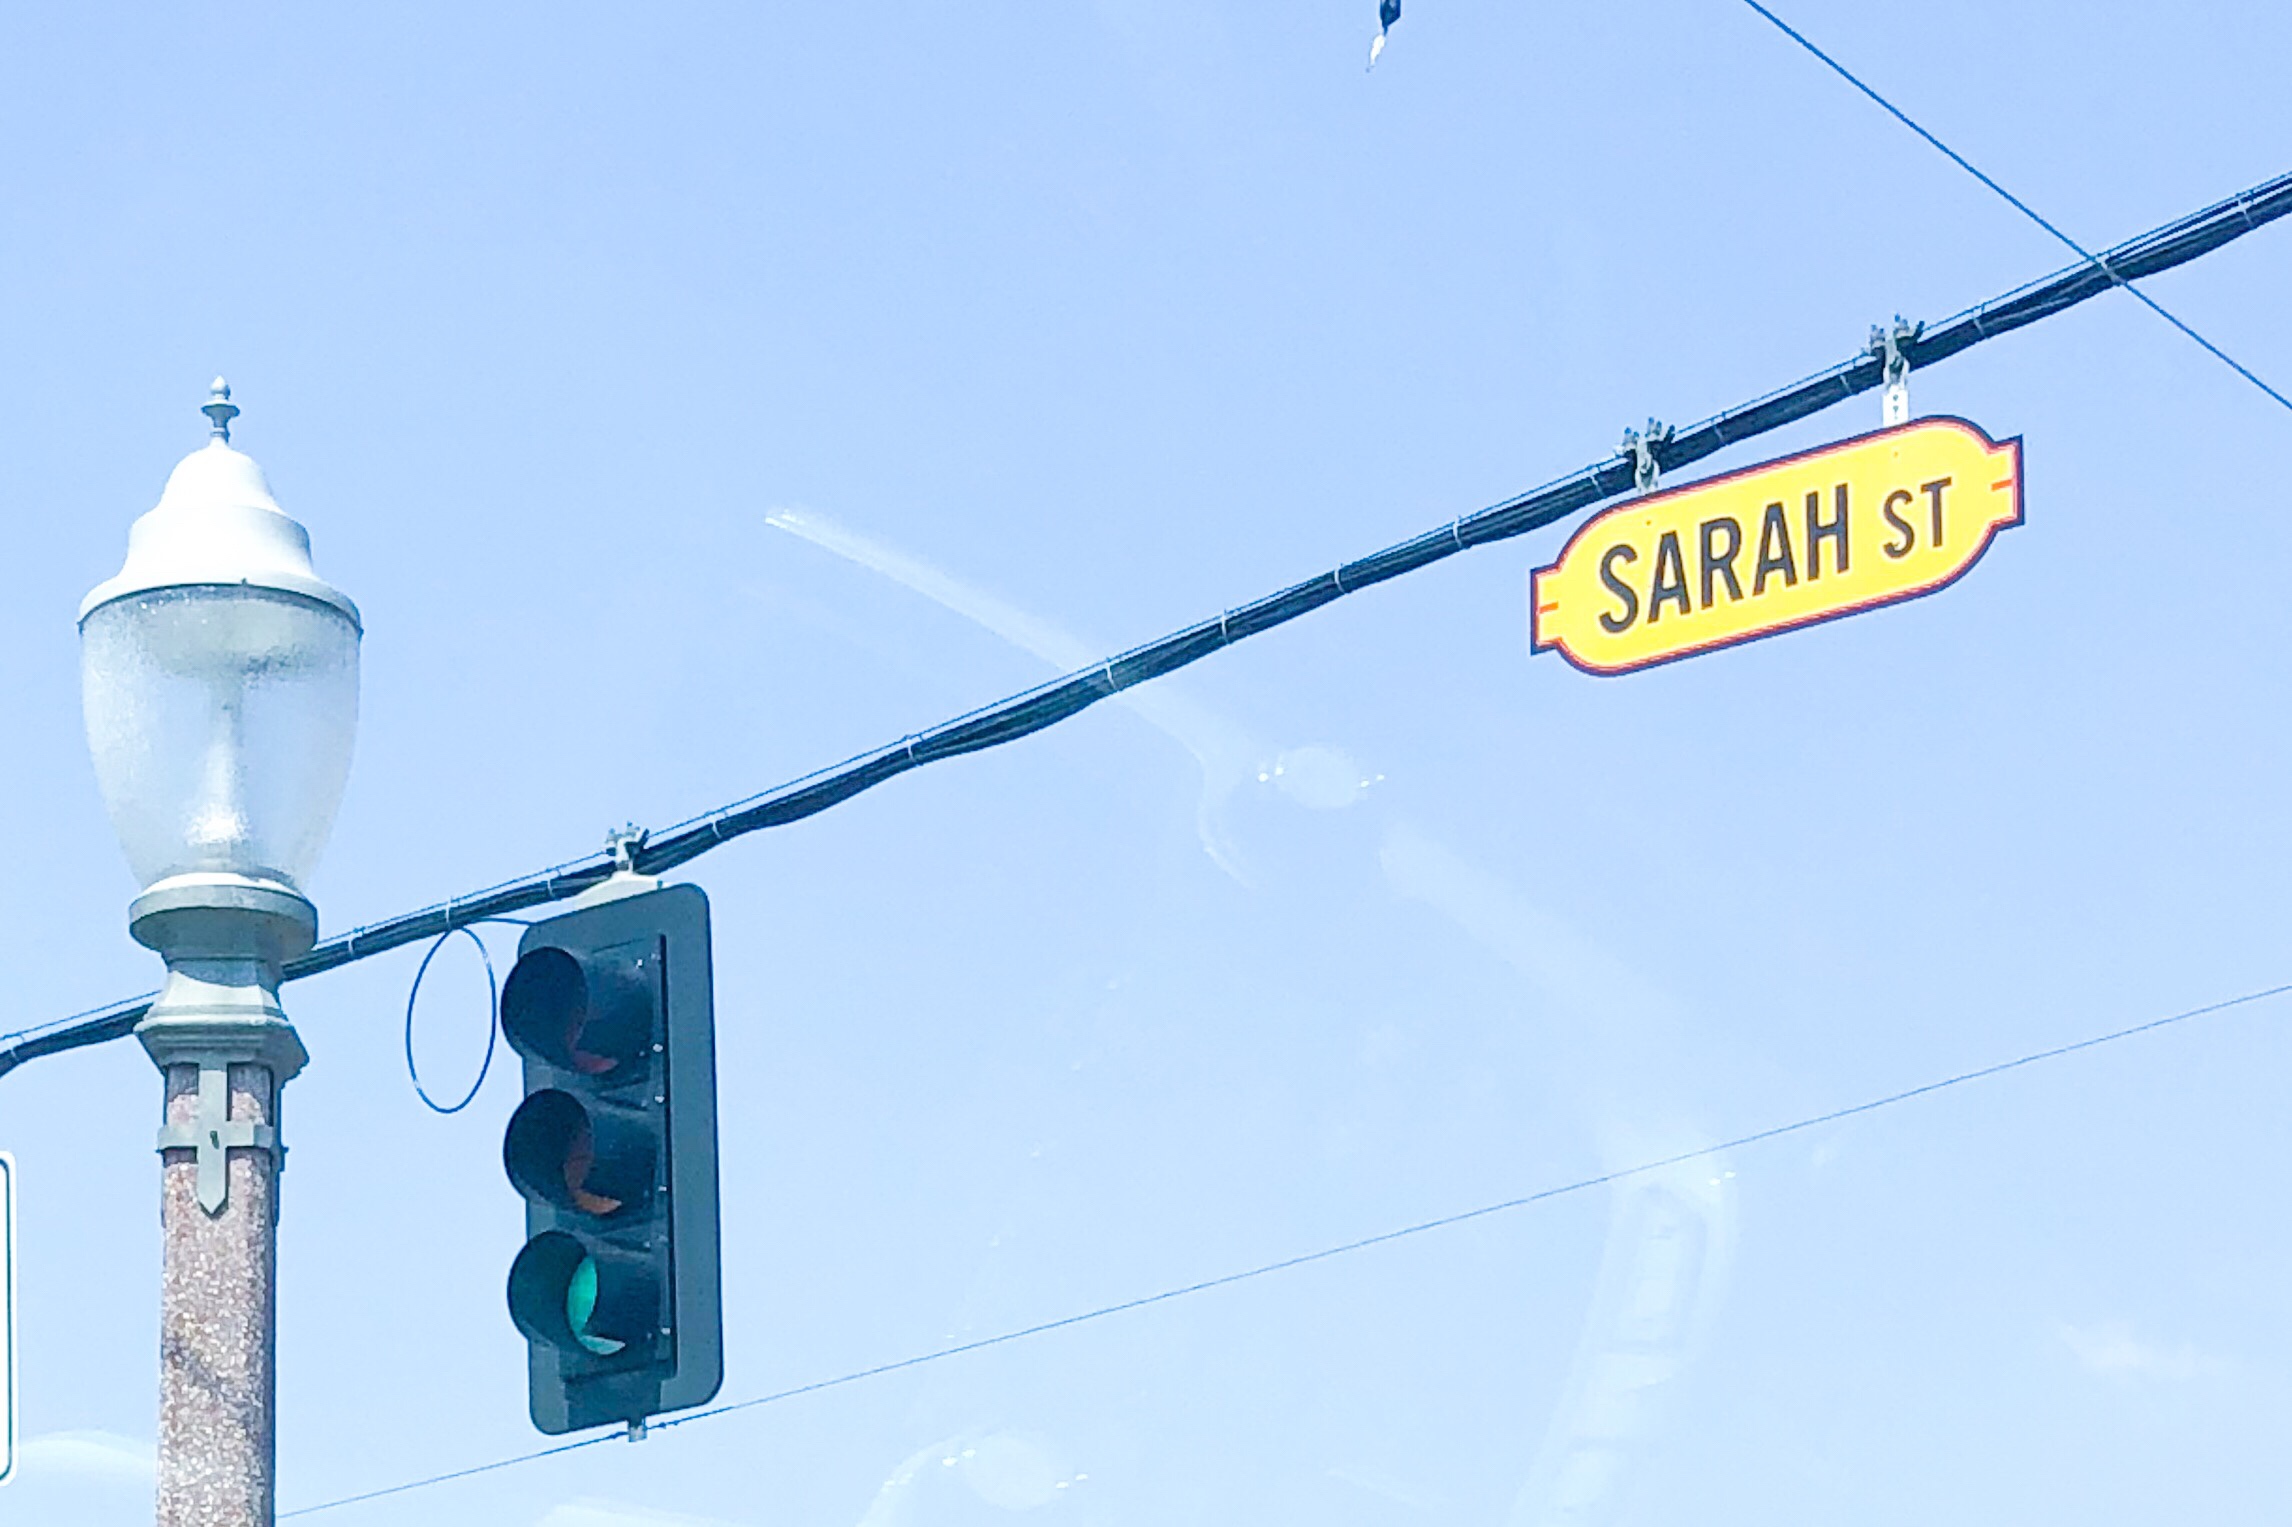 Sarah St.